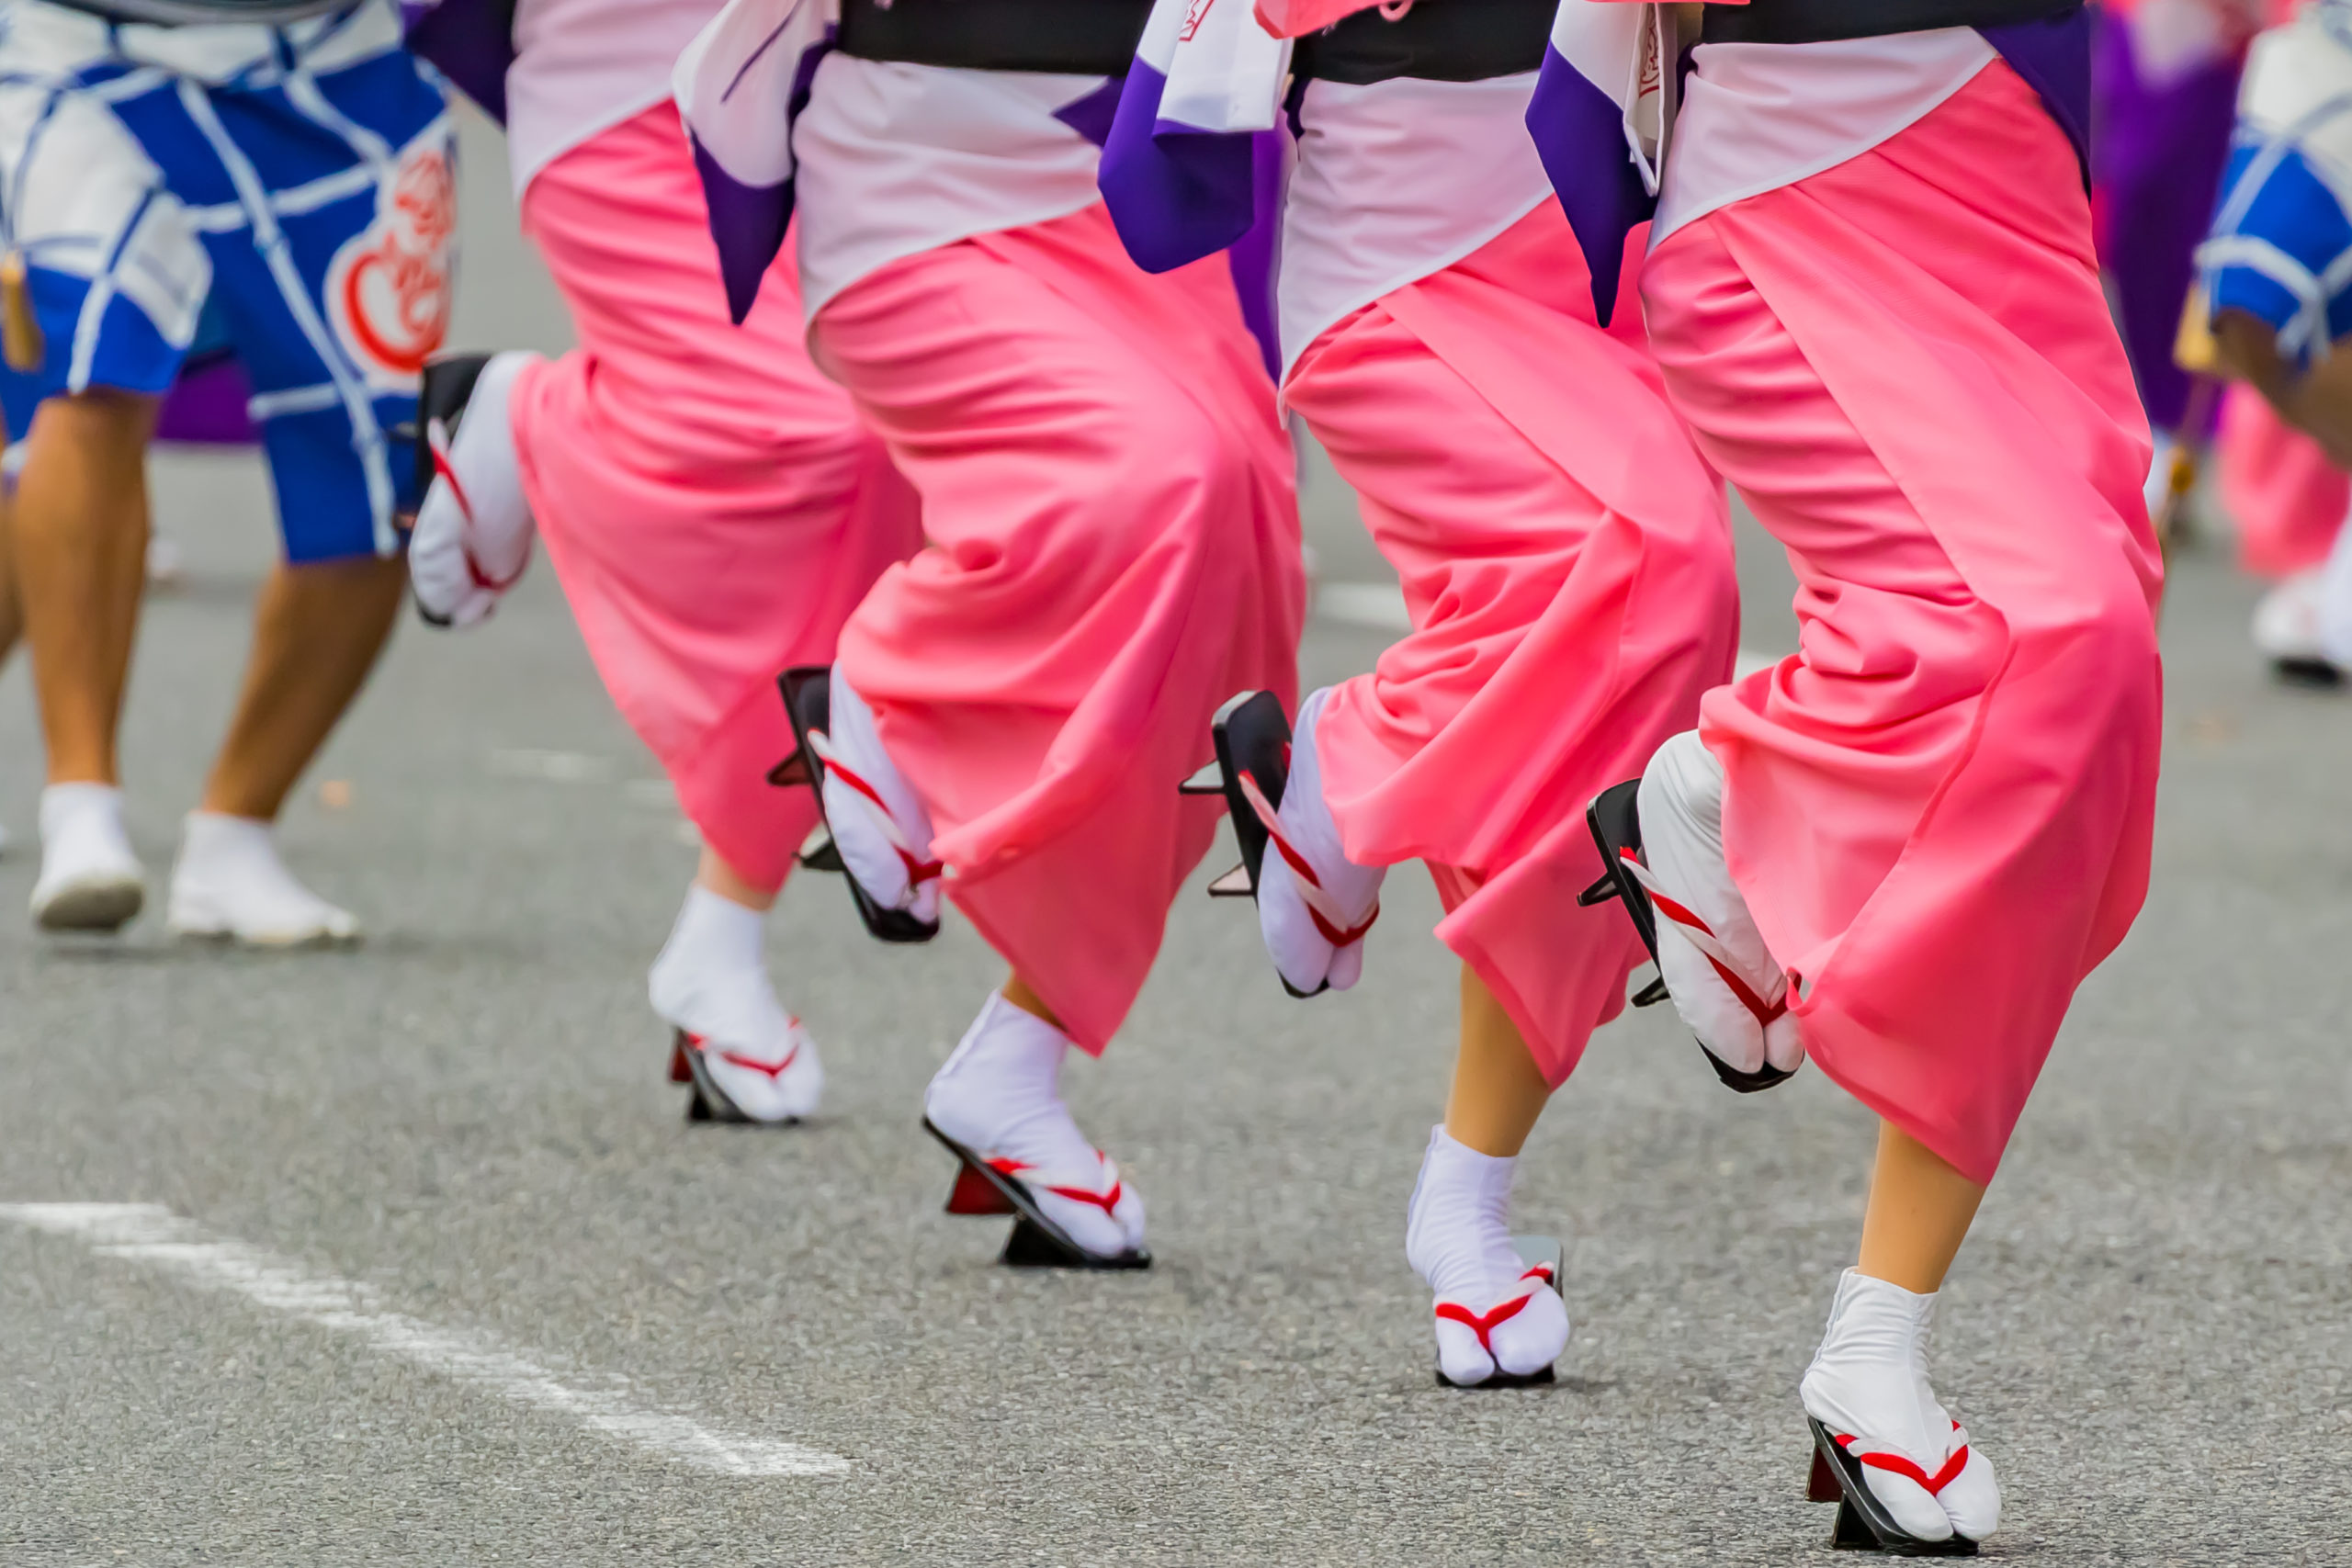 阿波踊りの舞台裏 知りたい 足袋と下駄 踊る阿呆のリアルな足元事情 オマツリジャパン 毎日 祭日